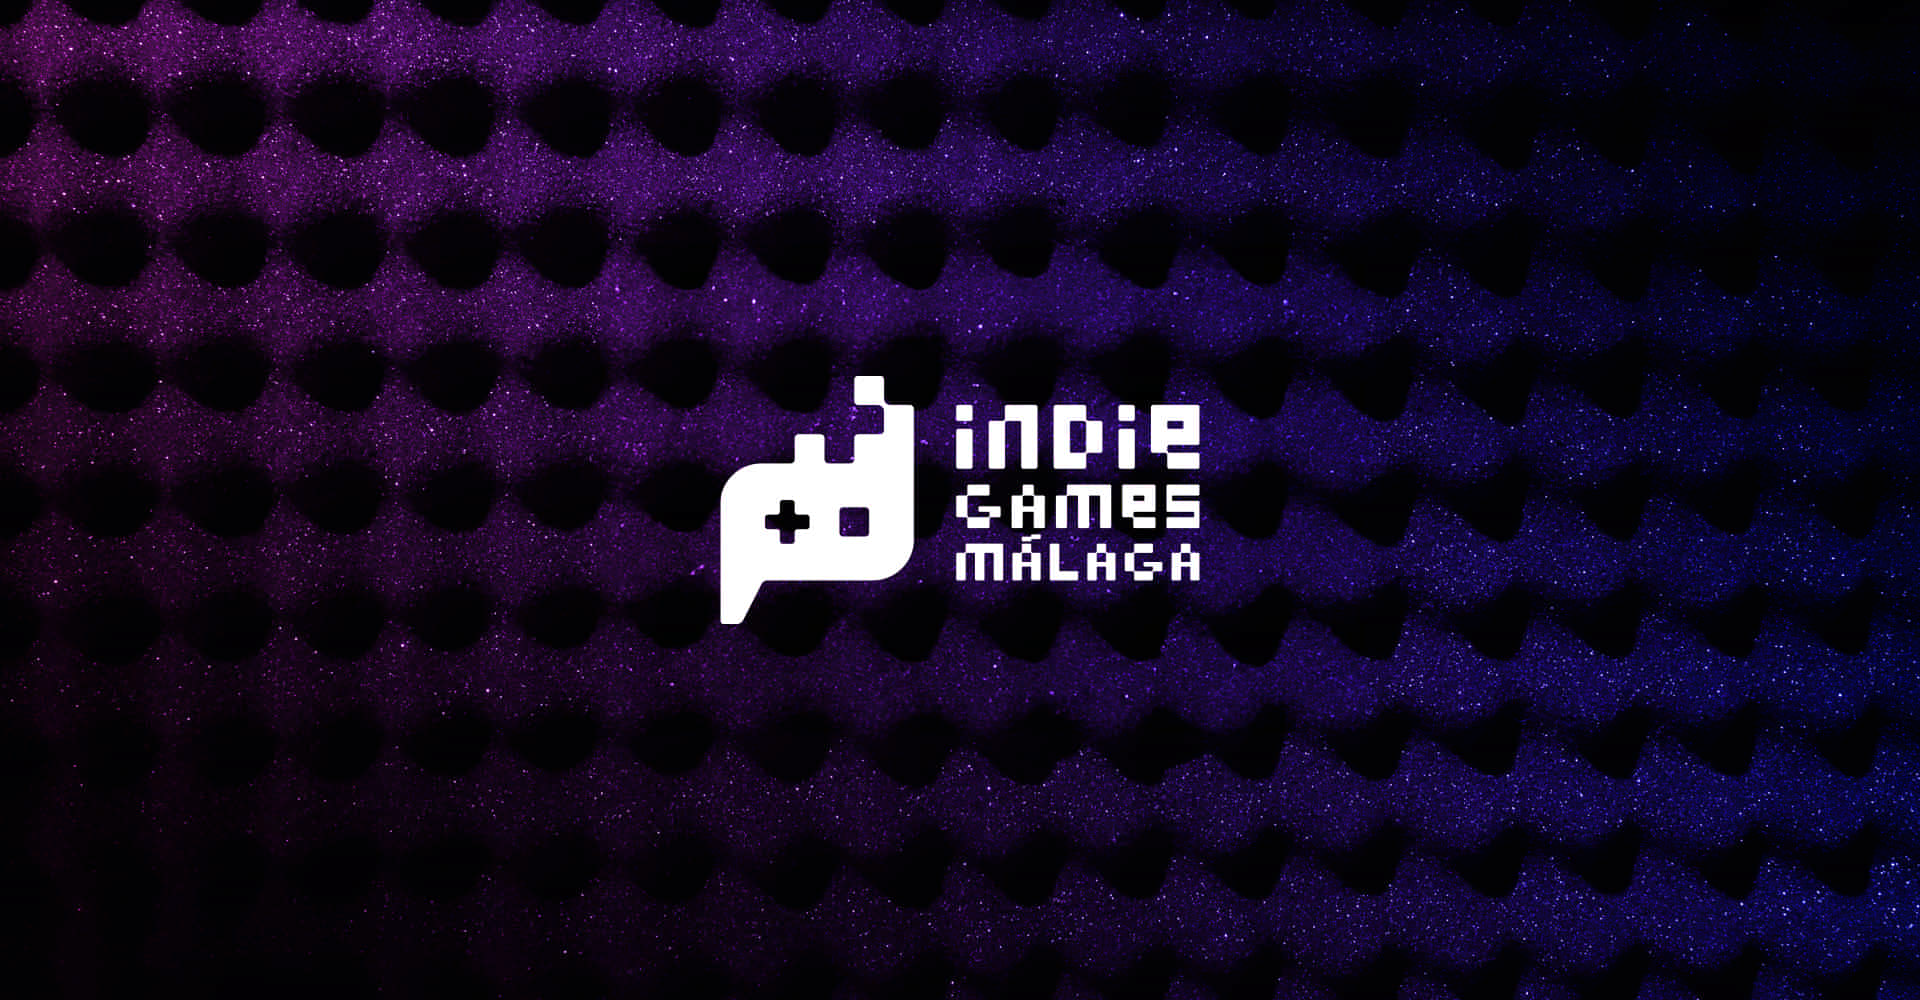 Diseño de lotogipo de Indie Games, una marca de otro nivel